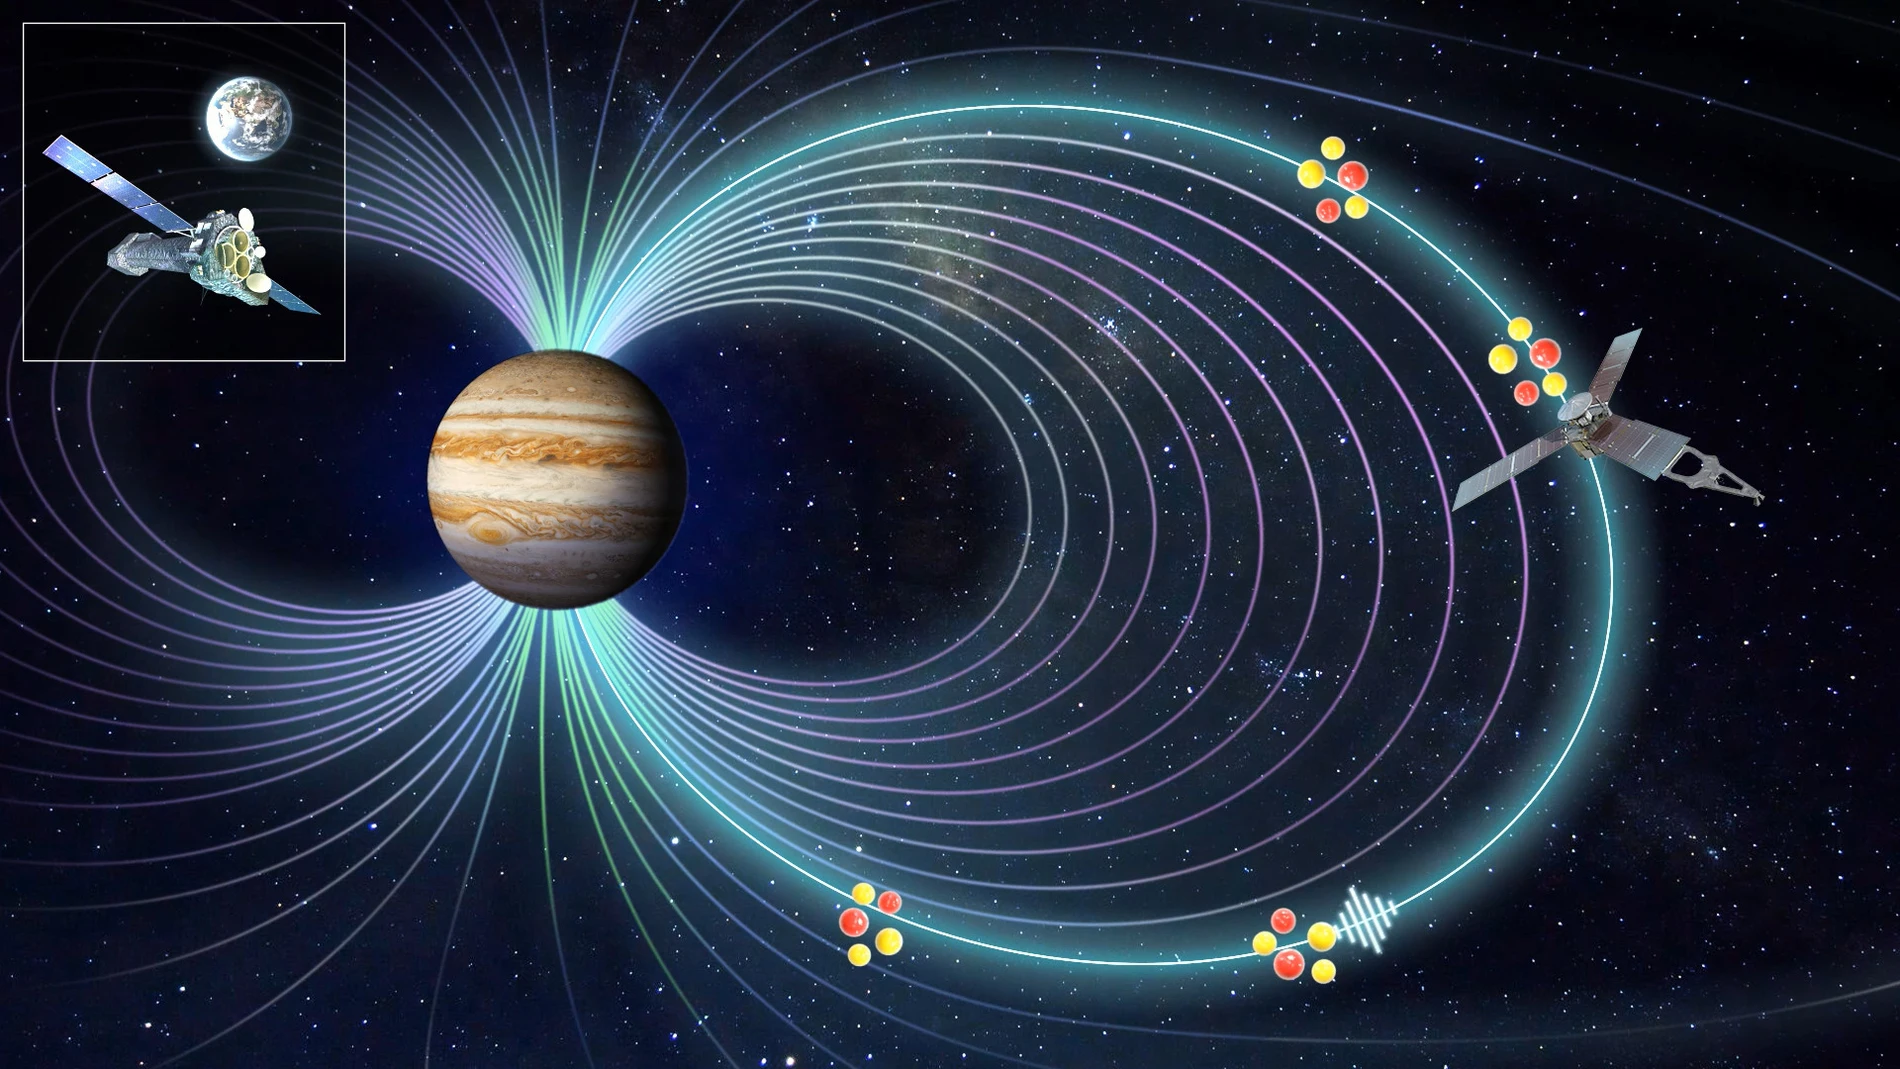 Los iones procedentes de Io surfean el campo magnético de Júpiter y provocan las auroras al chocar contra la atmósfera.